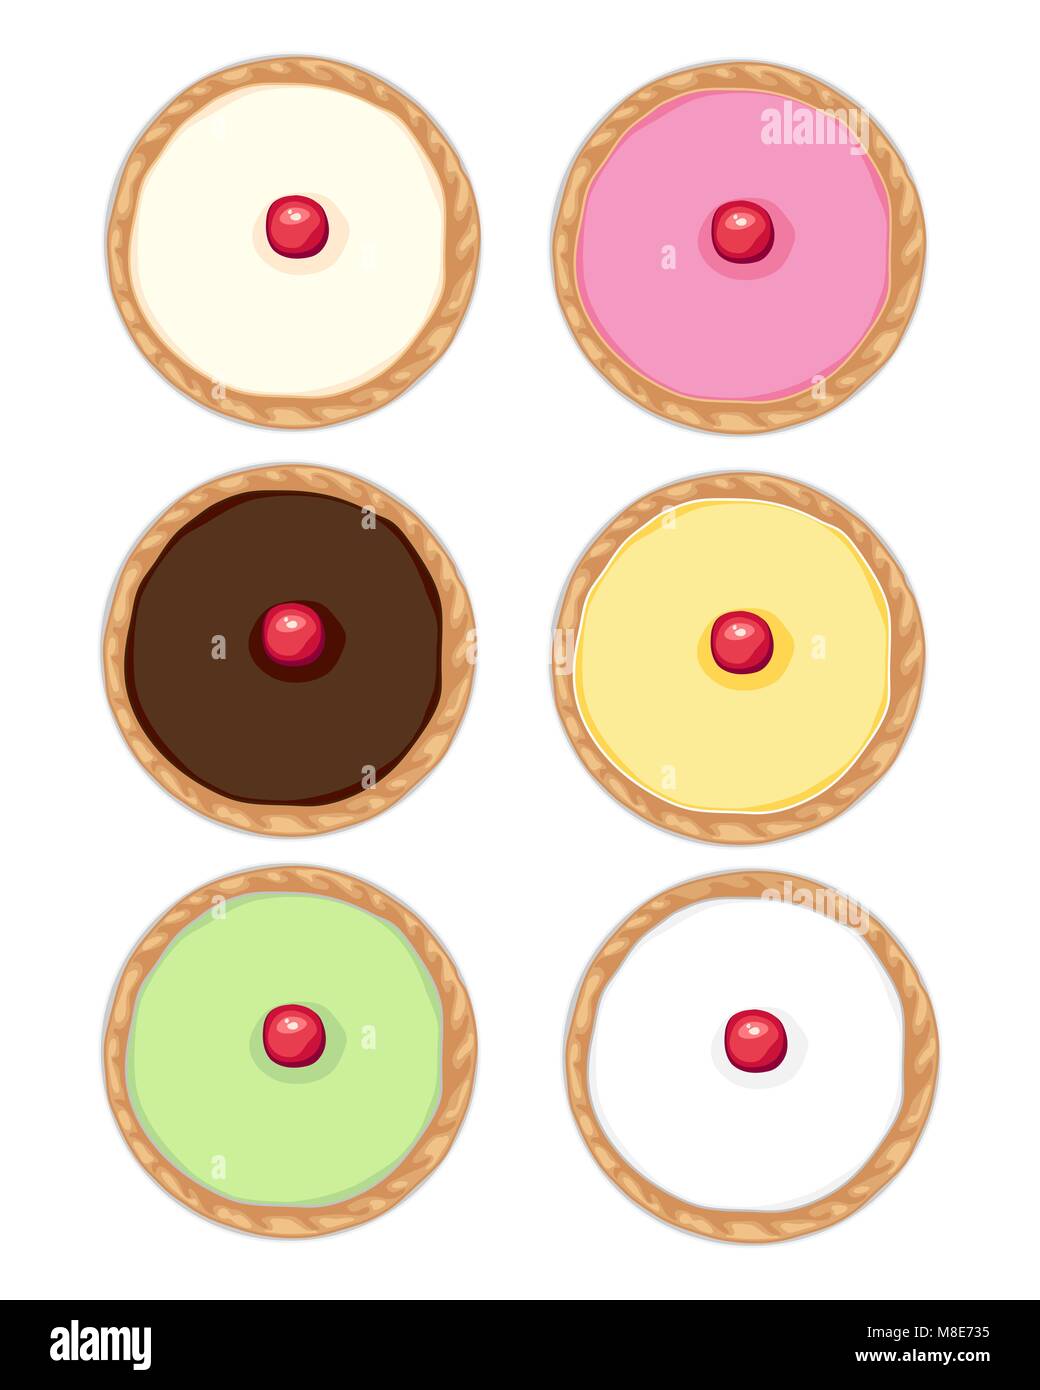 Un vecteur illustration au format eps de 6 gâteaux avec glaçage fondant et cerisier avec croûte dorée en différentes couleurs sur un fond blanc Illustration de Vecteur